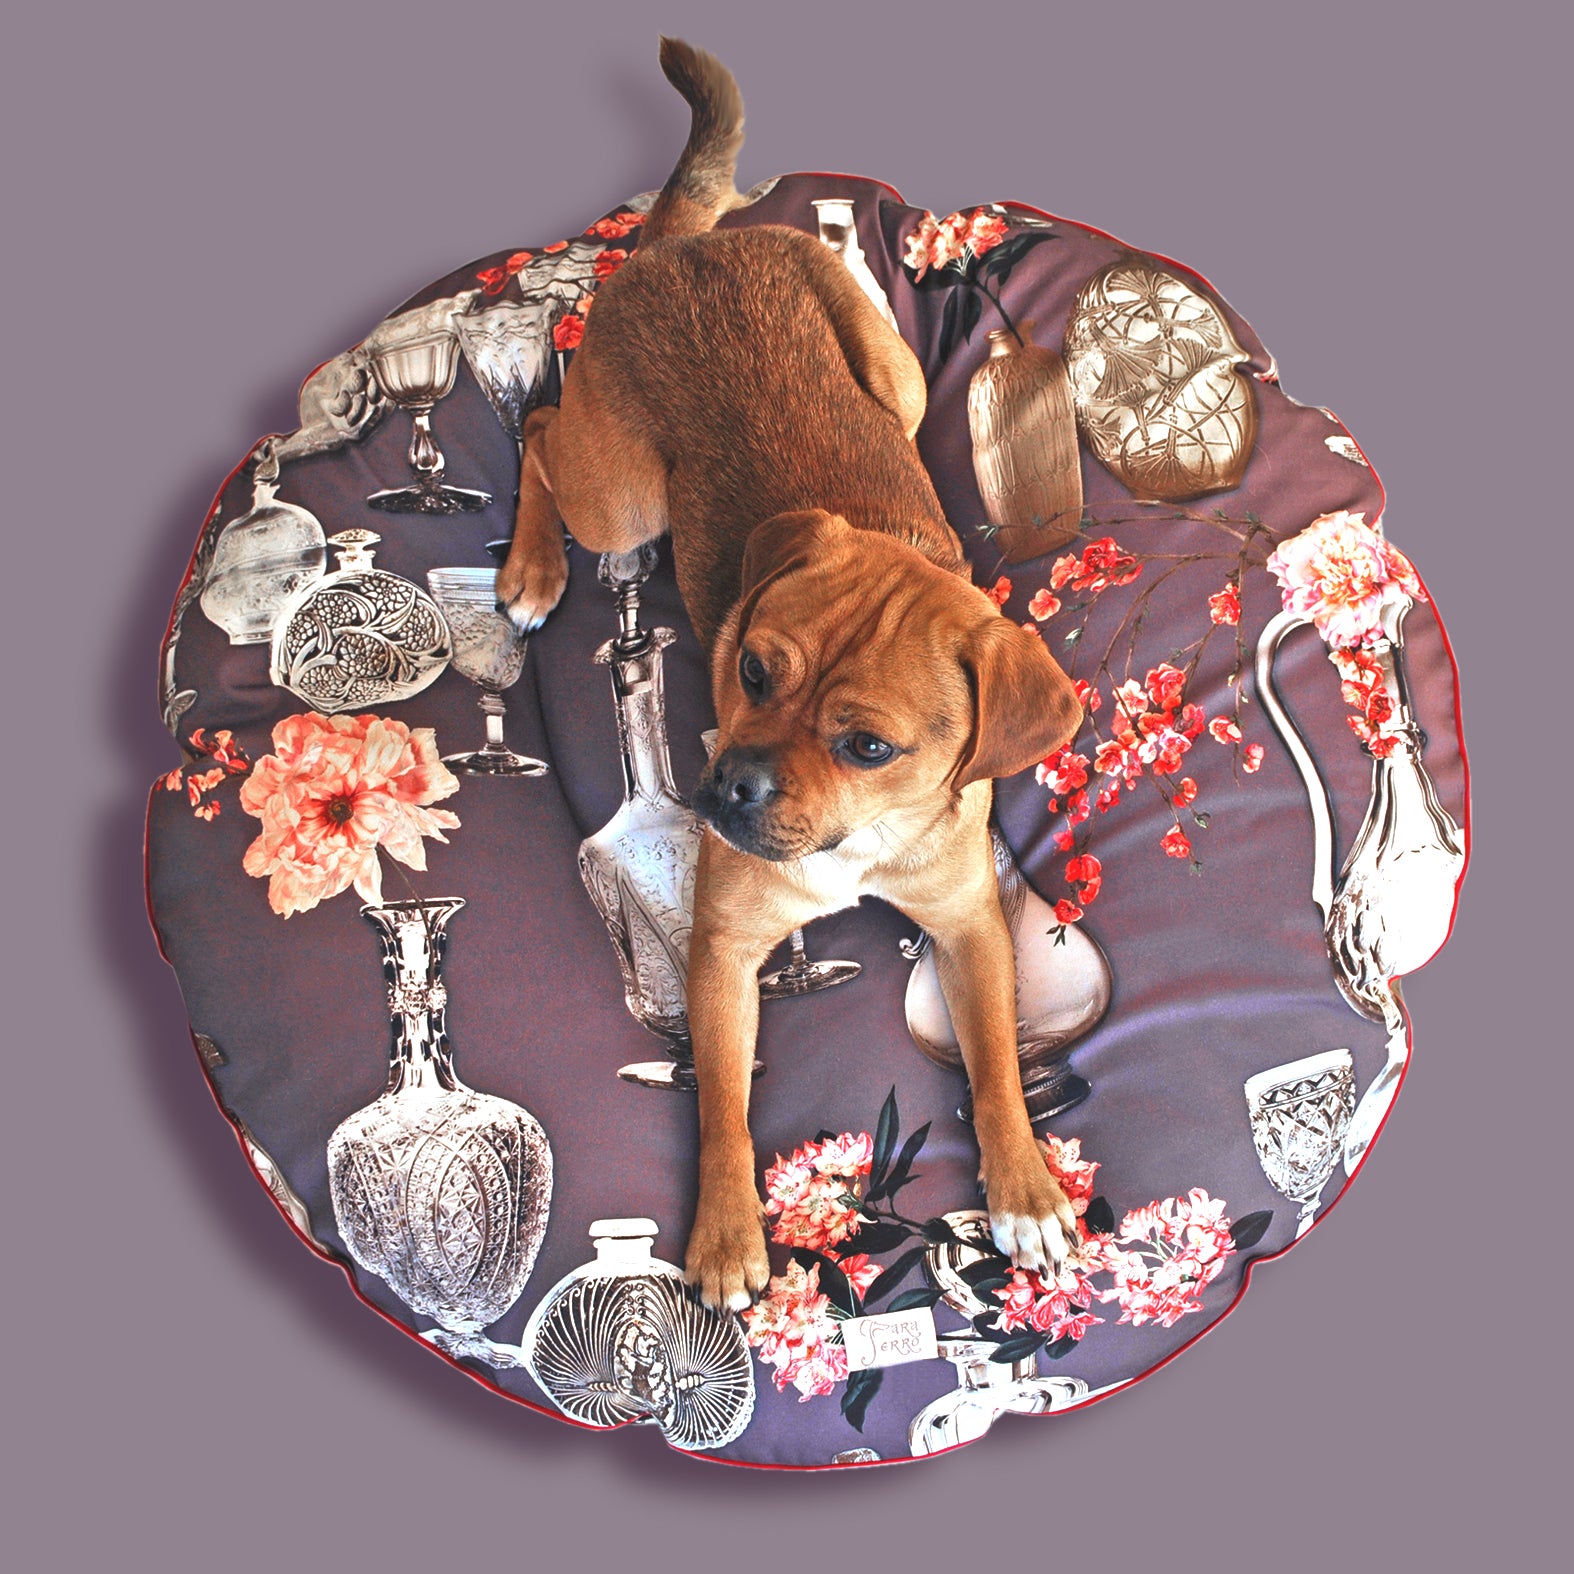 Hundebett rund in Violett mit Blumen für kleine Hunde wie Chihuahua